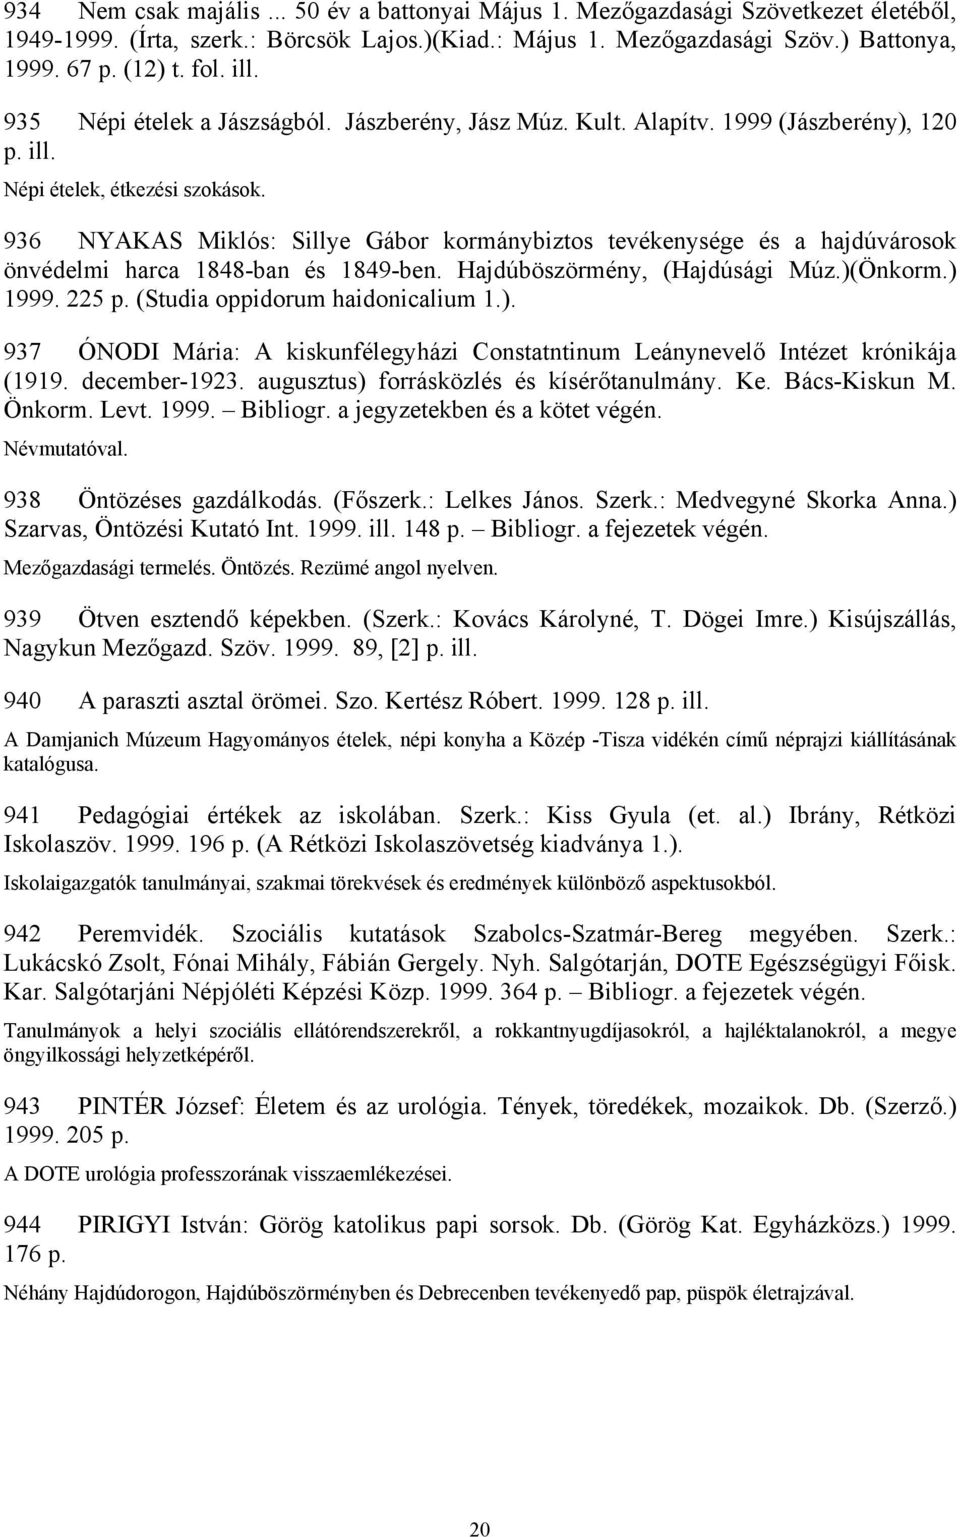 936 NYAKAS Miklós: Sillye Gábor kormánybiztos tevékenysége és a hajdúvárosok önvédelmi harca 1848-ban és 1849-ben. Hajdúböszörmény, (Hajdúsági Múz.)(Önkorm.) 1999. 225 p.